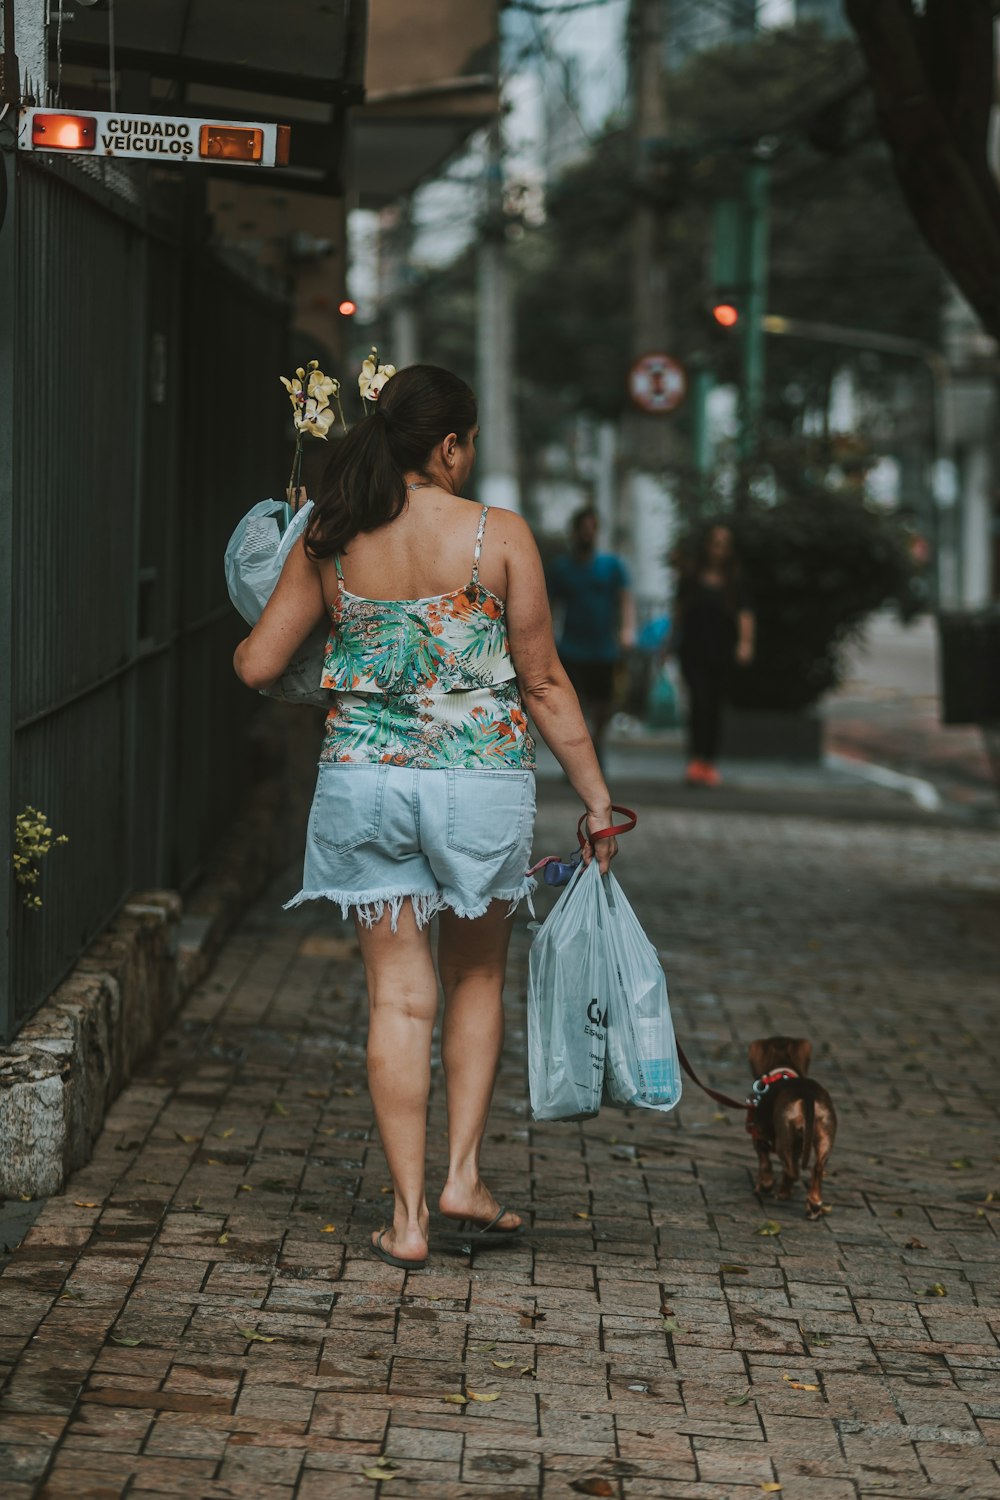 a woman walking a dog down a sidewalk